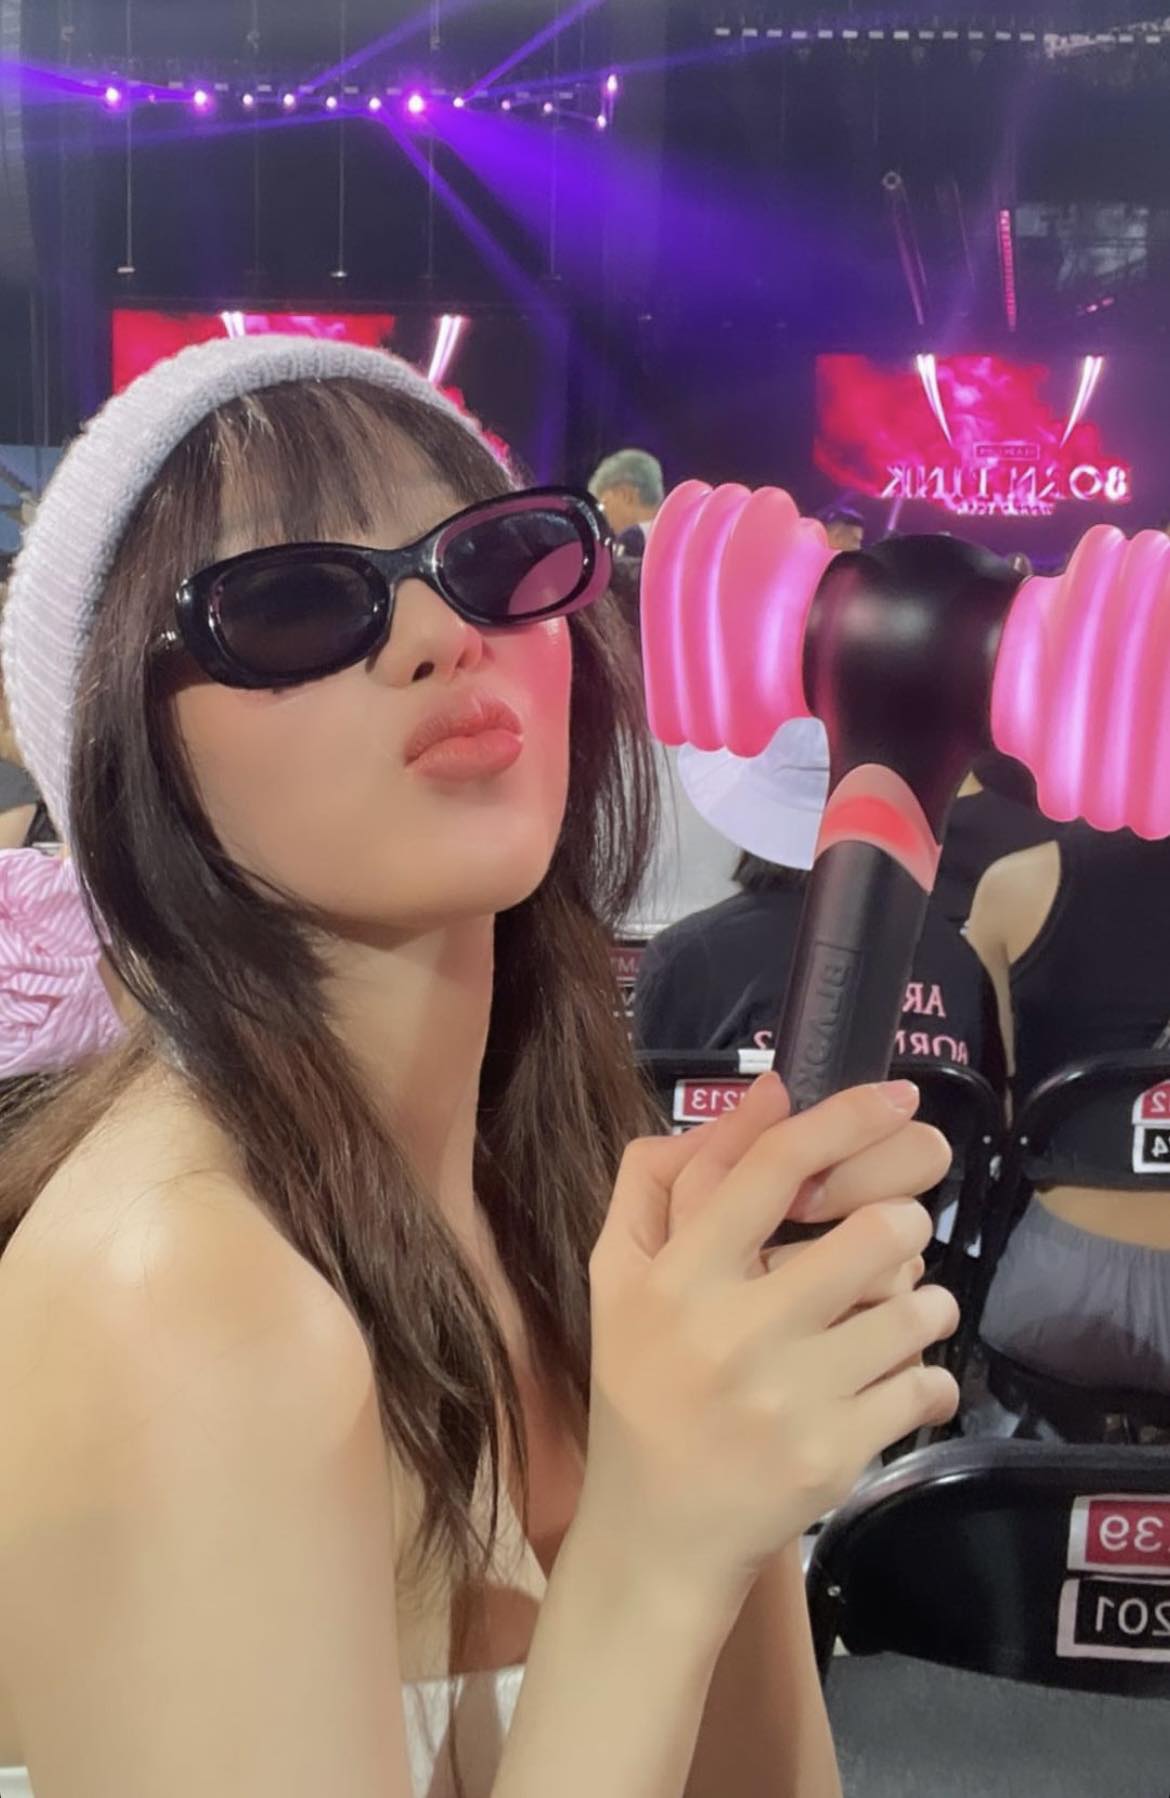 Dàn sao Việt đổ bộ concert BLACKPINK ngày 2 đông hơn cả ngày 1, 'hotgirl' Cici được vào sân phút chót - ảnh 11